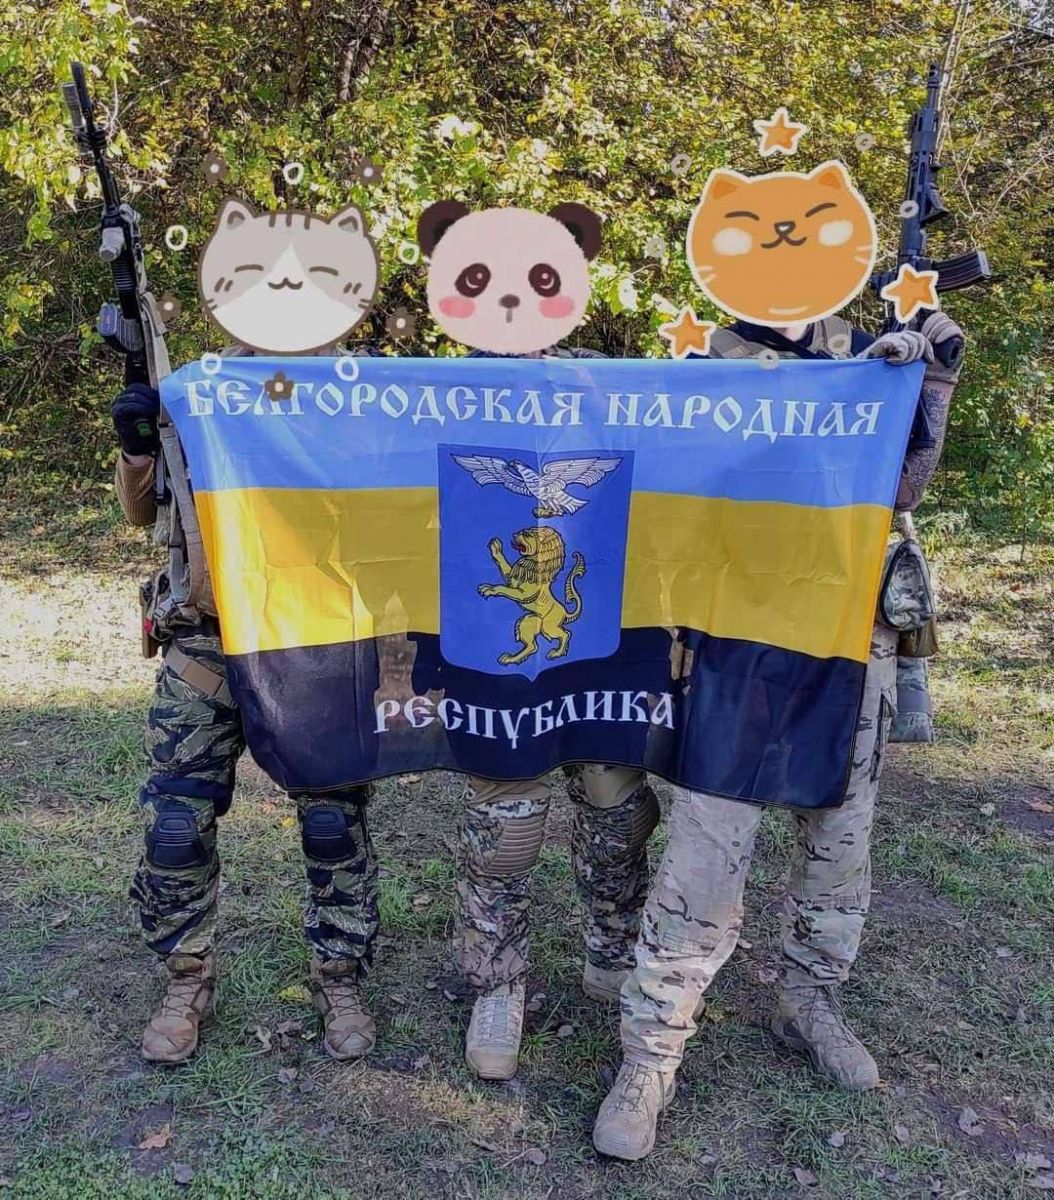 Фото: Telegram-канал Збройні сили України. Війна з окупантами